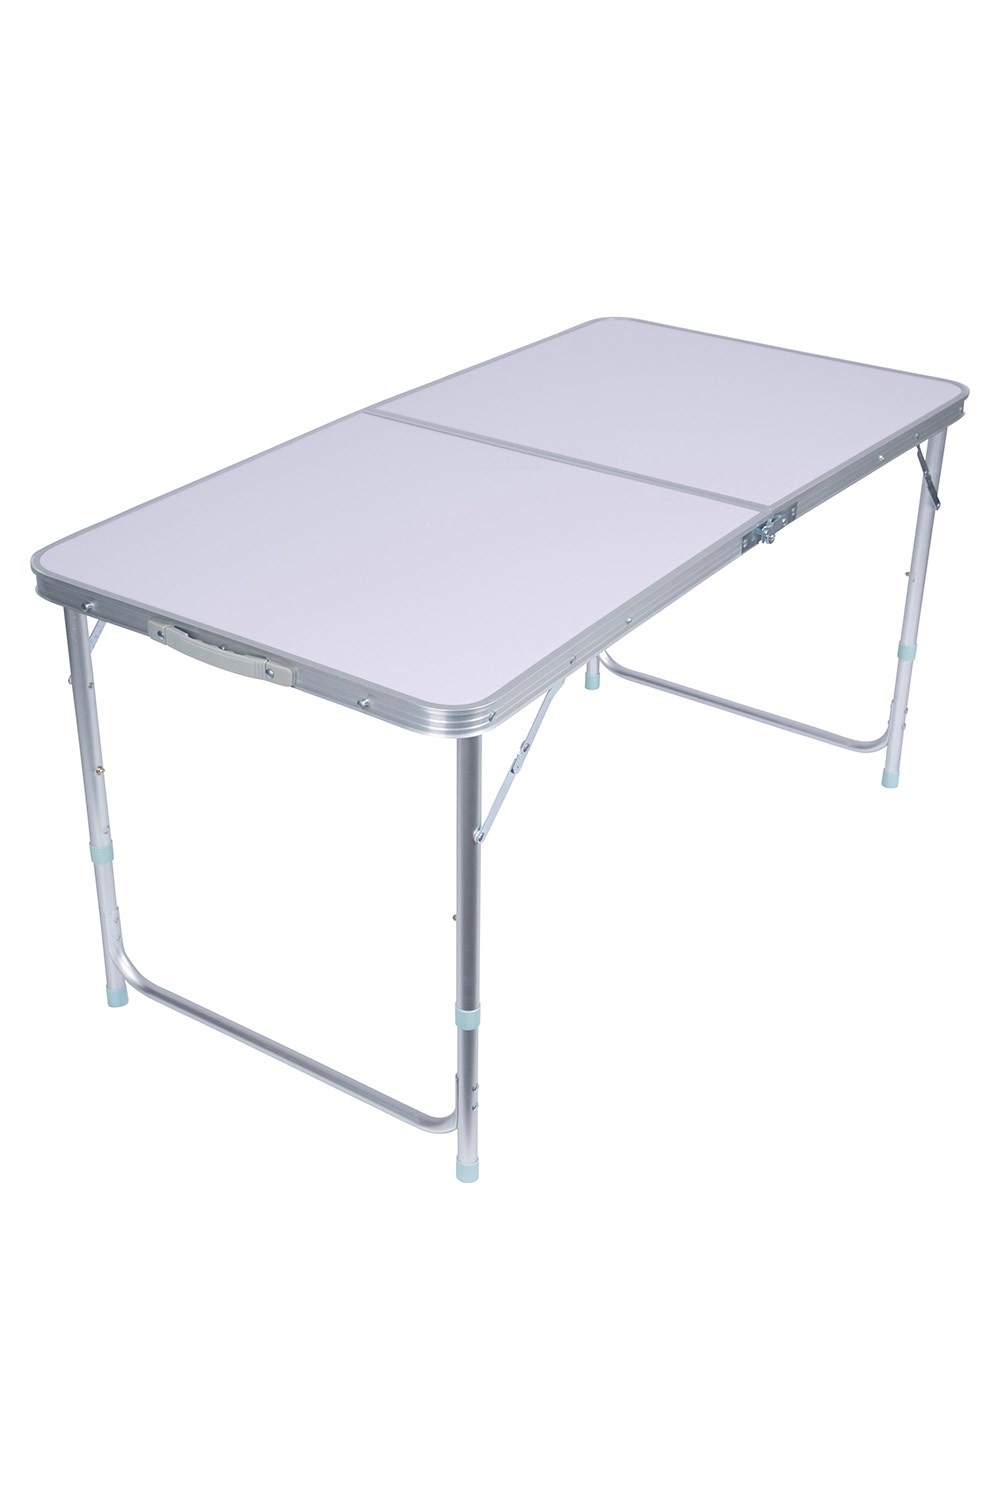 Rectangular Resin Folding Table - White